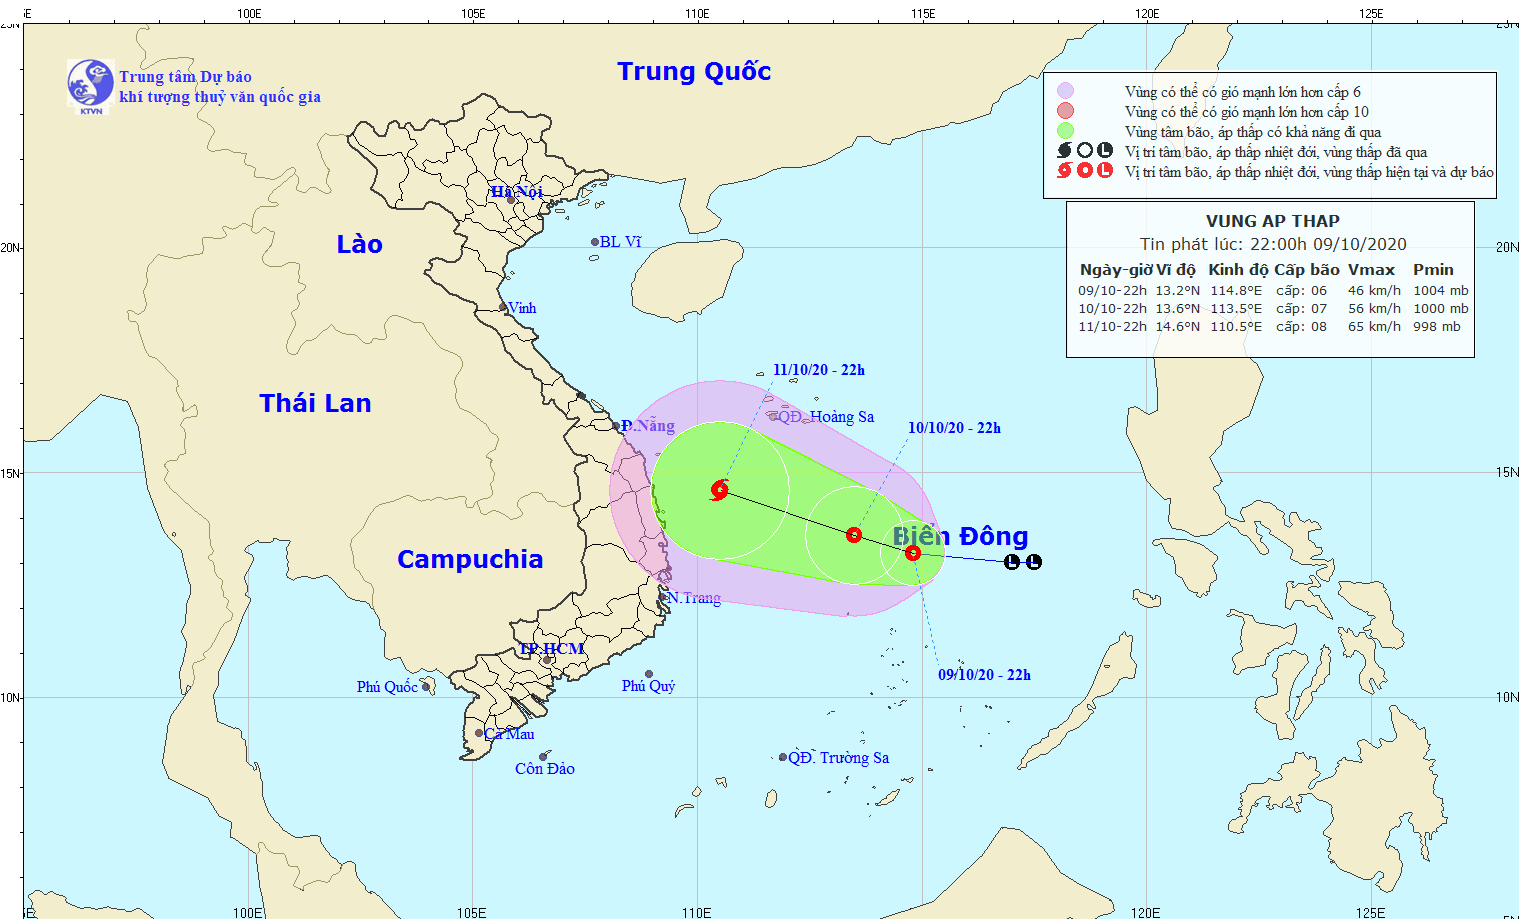 Hồi 22 giờ ngày 9/10, vị trí tâm áp thấp nhiệt đới cách đảo Song Tử Tây khoảng 200 km về phía Bắc. Ảnh: KTVN